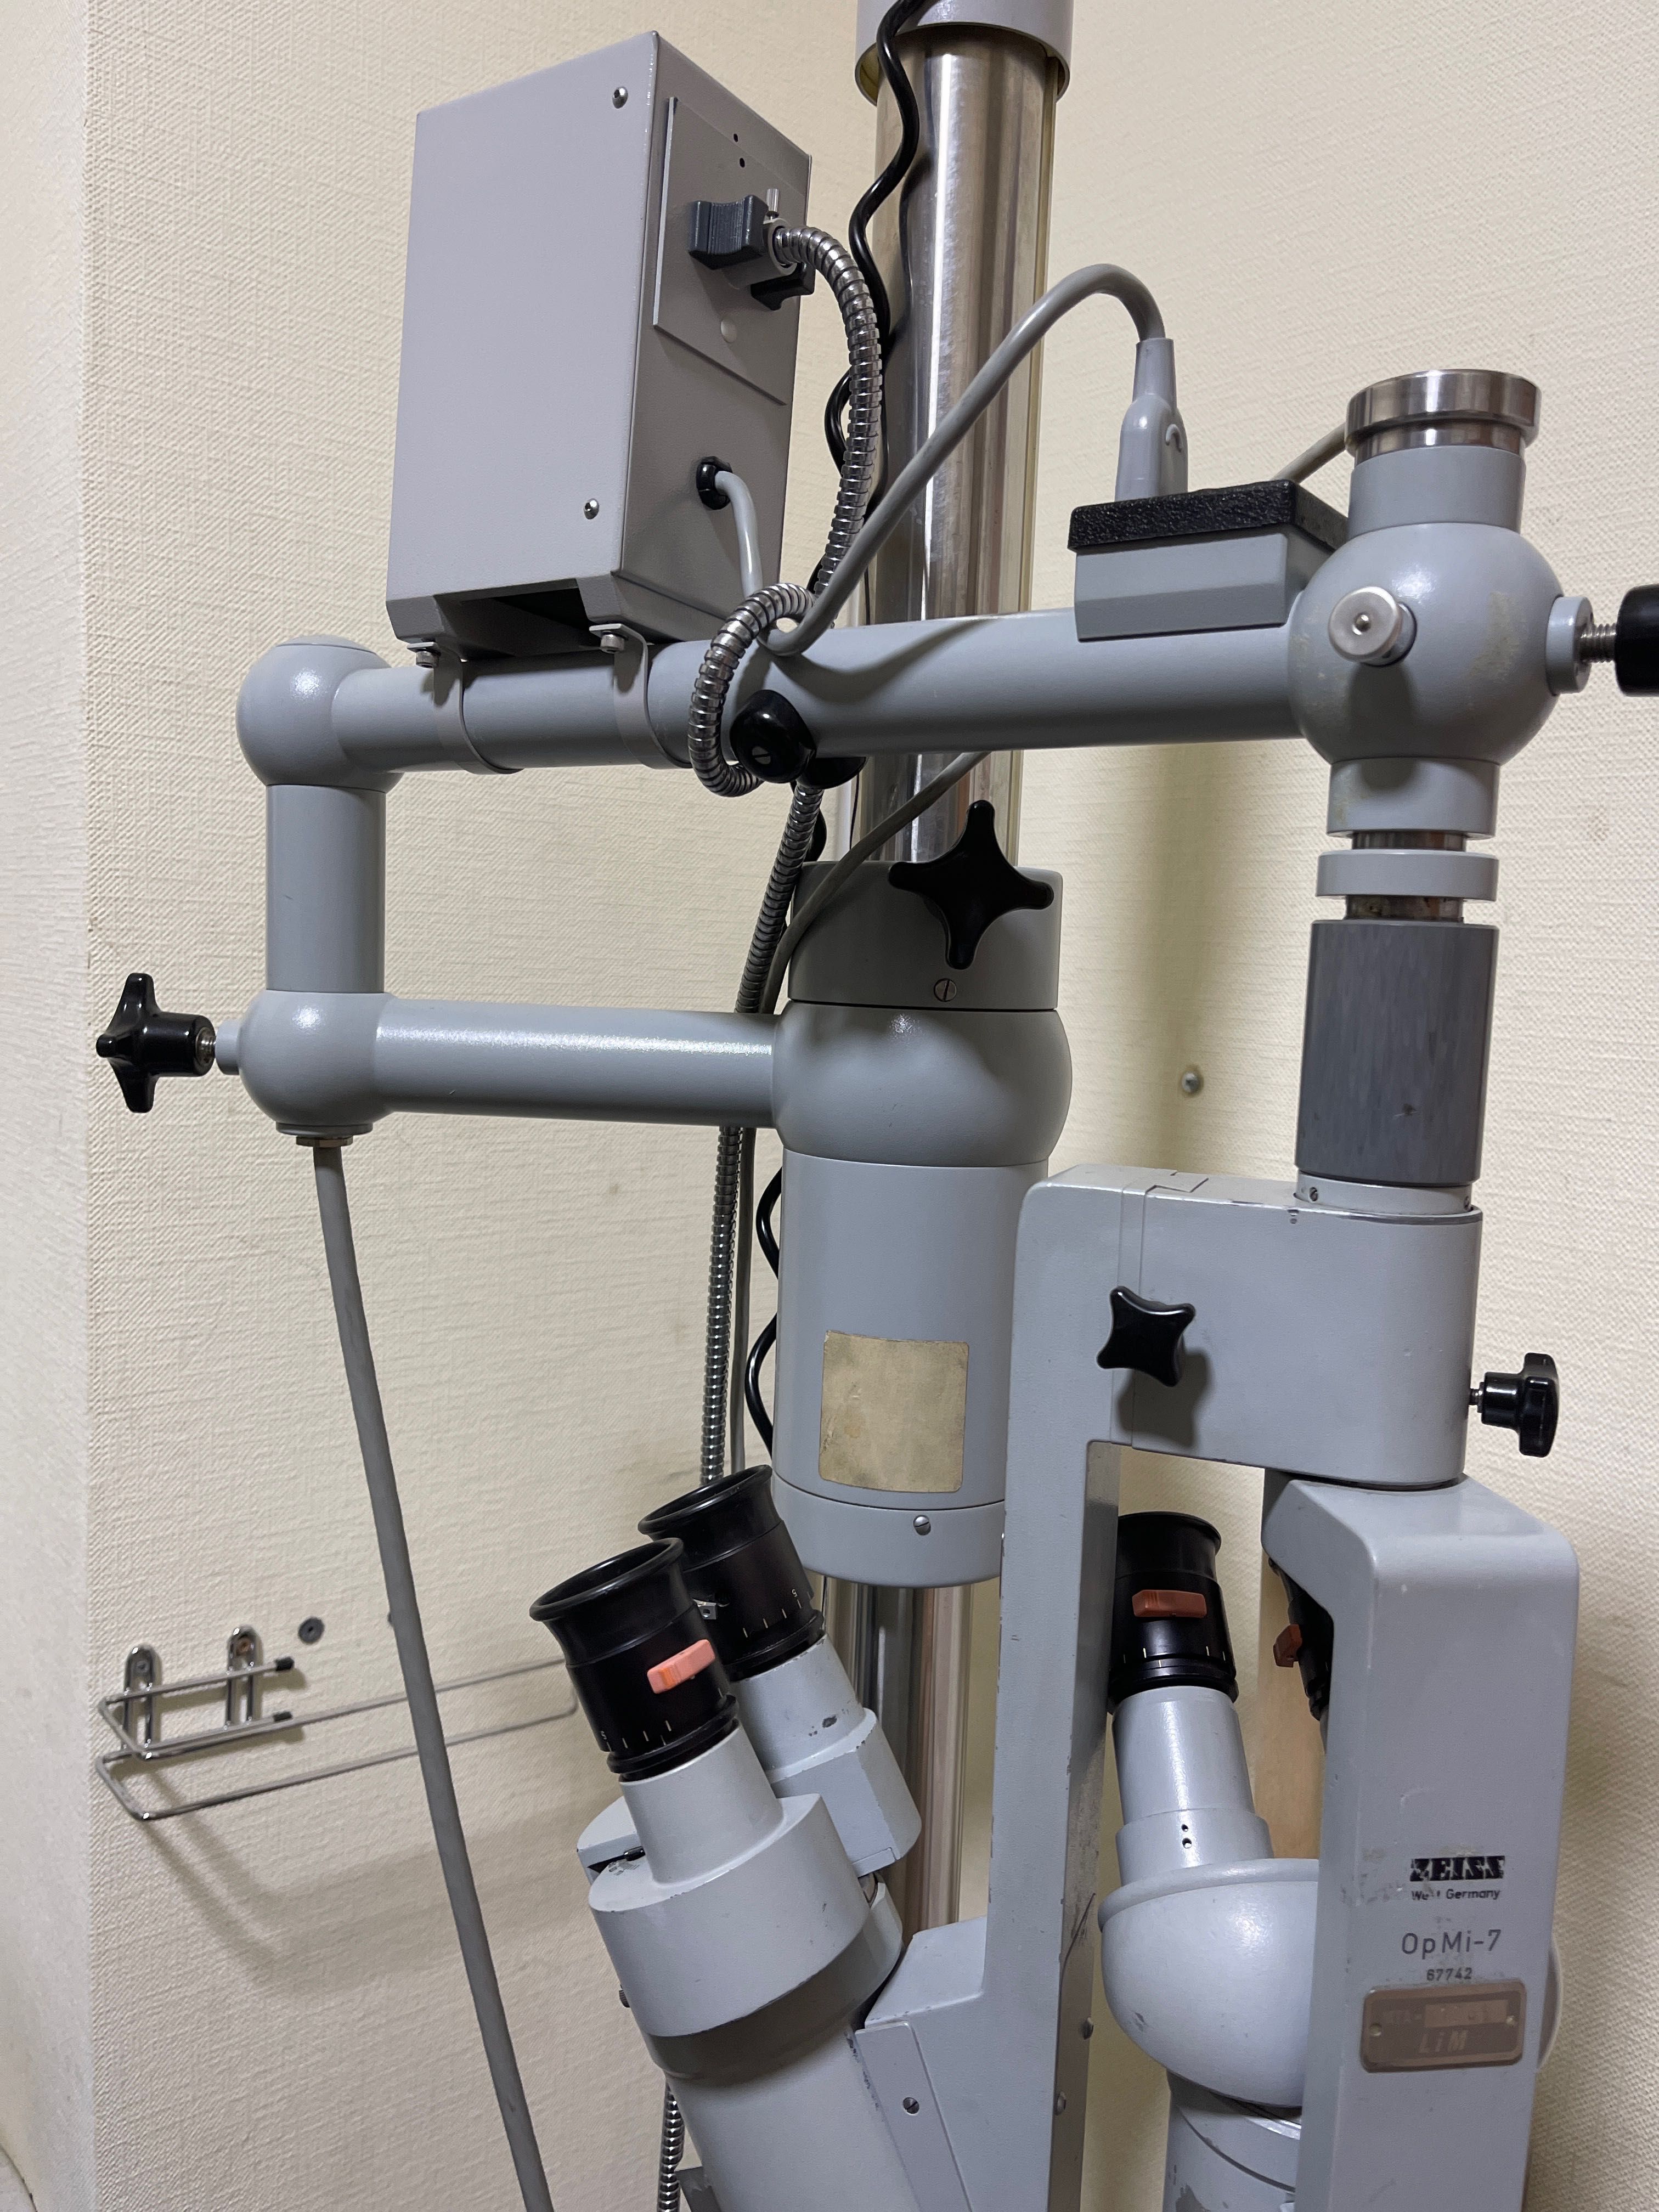 микроскоп операционный медецинский Zeiss OP MI 7